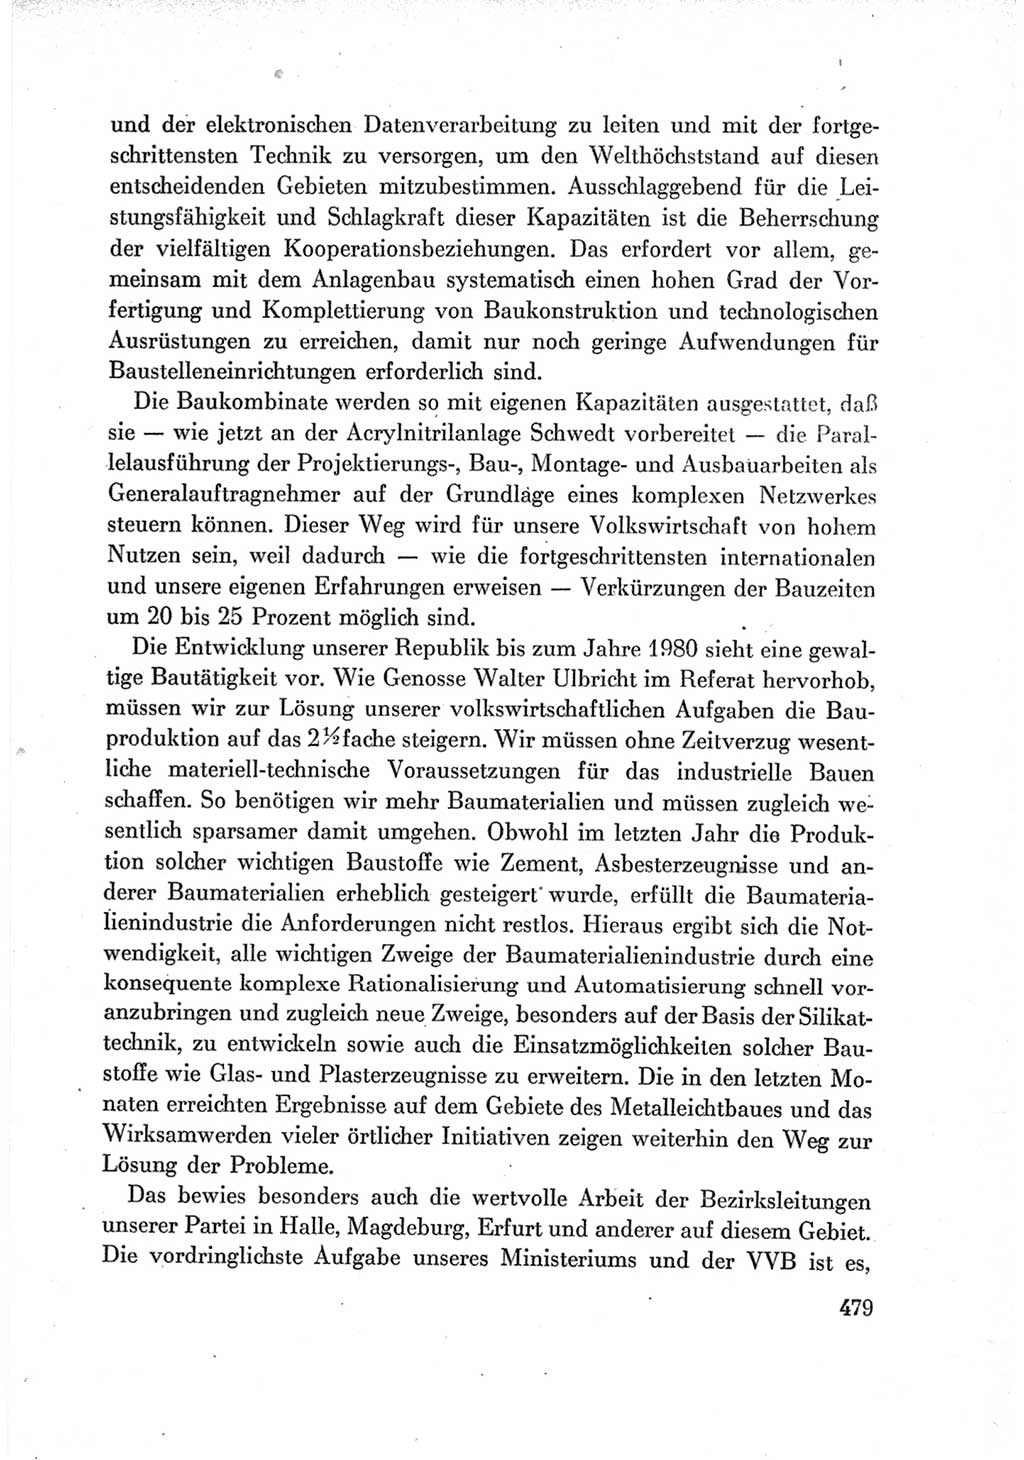 Protokoll der Verhandlungen des Ⅶ. Parteitages der Sozialistischen Einheitspartei Deutschlands (SED) [Deutsche Demokratische Republik (DDR)] 1967, Band Ⅰ, Seite 479 (Prot. Verh. Ⅶ. PT SED DDR 1967, Bd. Ⅰ, S. 479)